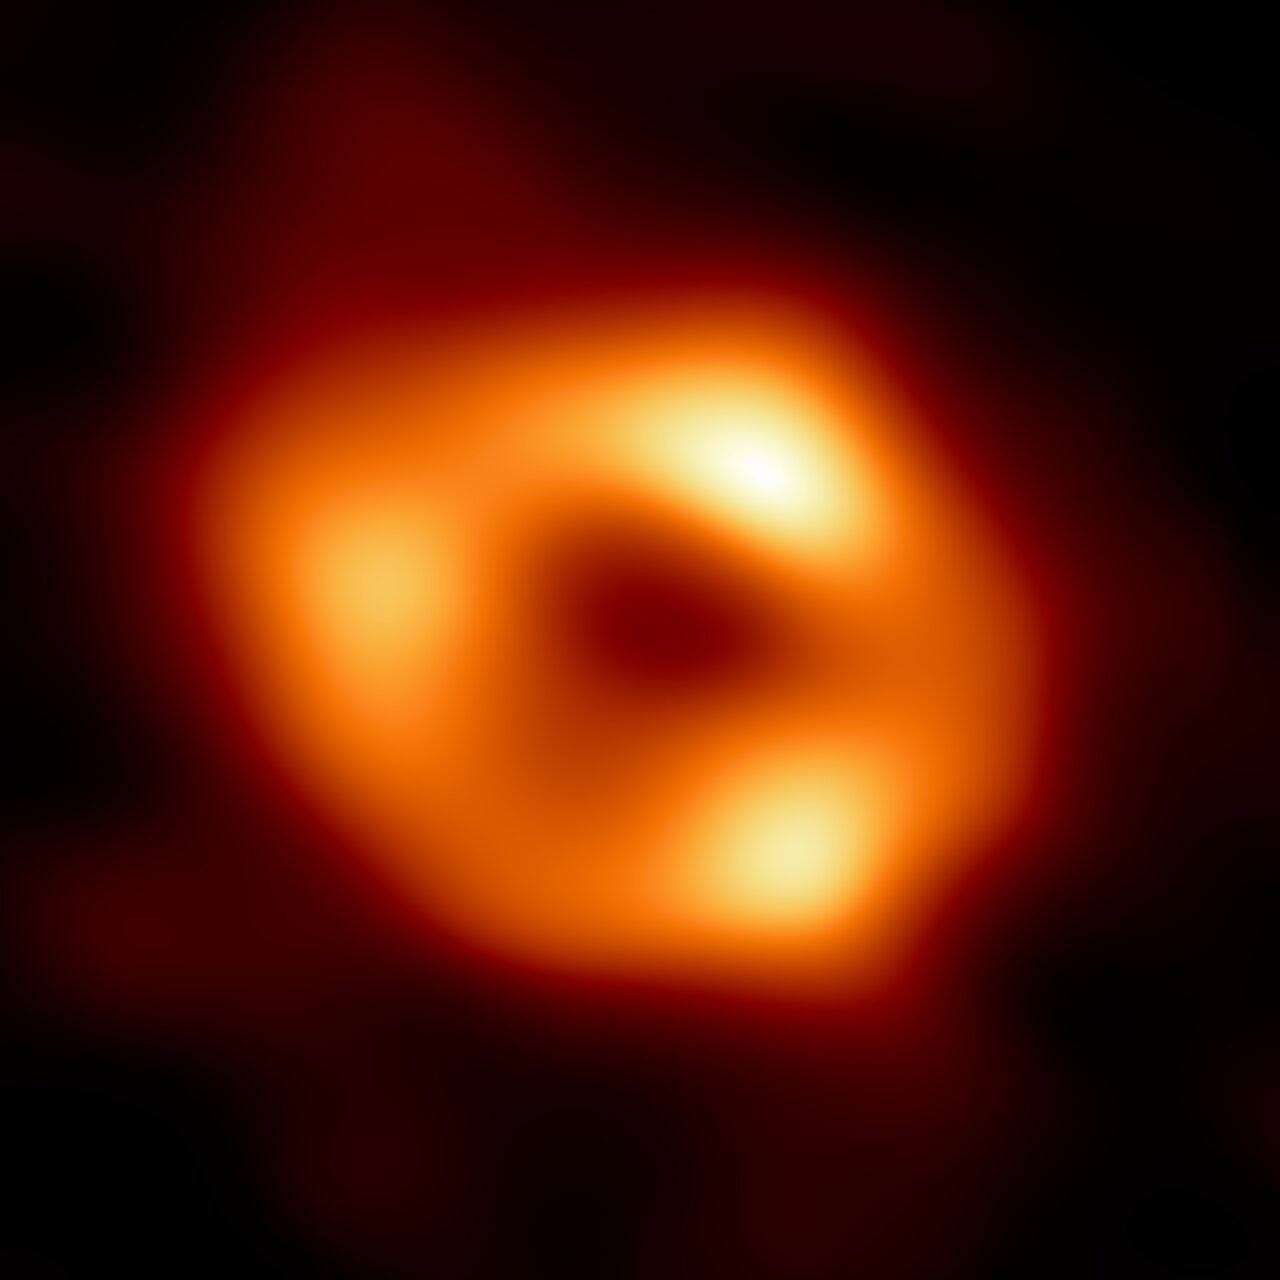 Este es el agujero negro del centro de nuestra galaxia